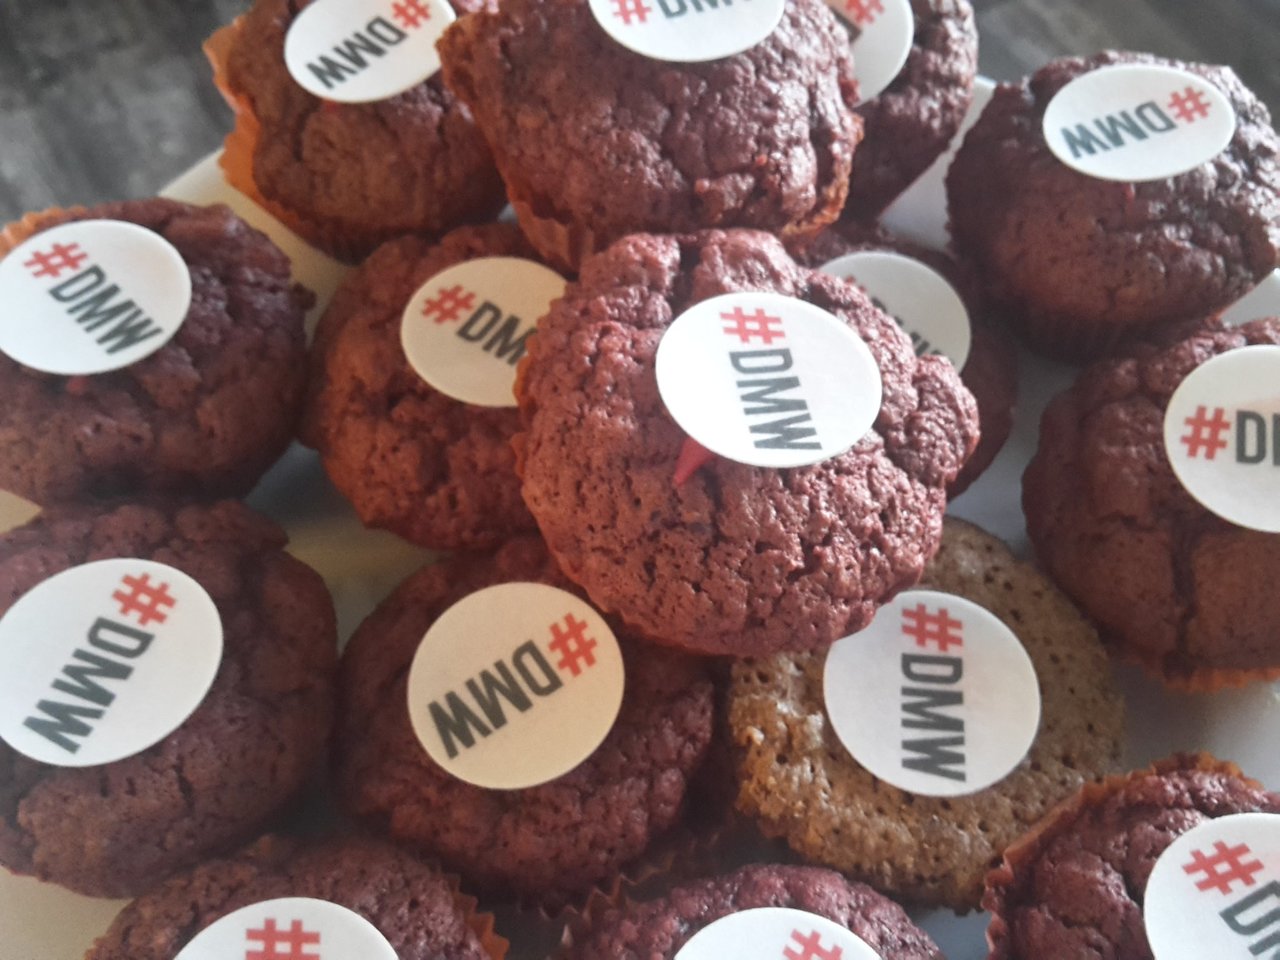 Freut euch auf leckere #DMW-Muffins auf der @Book_Fair, 12 Uhr zum #neverlunchalone Meet-up. Halle 4 D.91. Wer isst mit? #DMWFBM17 #fbm17 https://t.co/kZaFrTsHTL